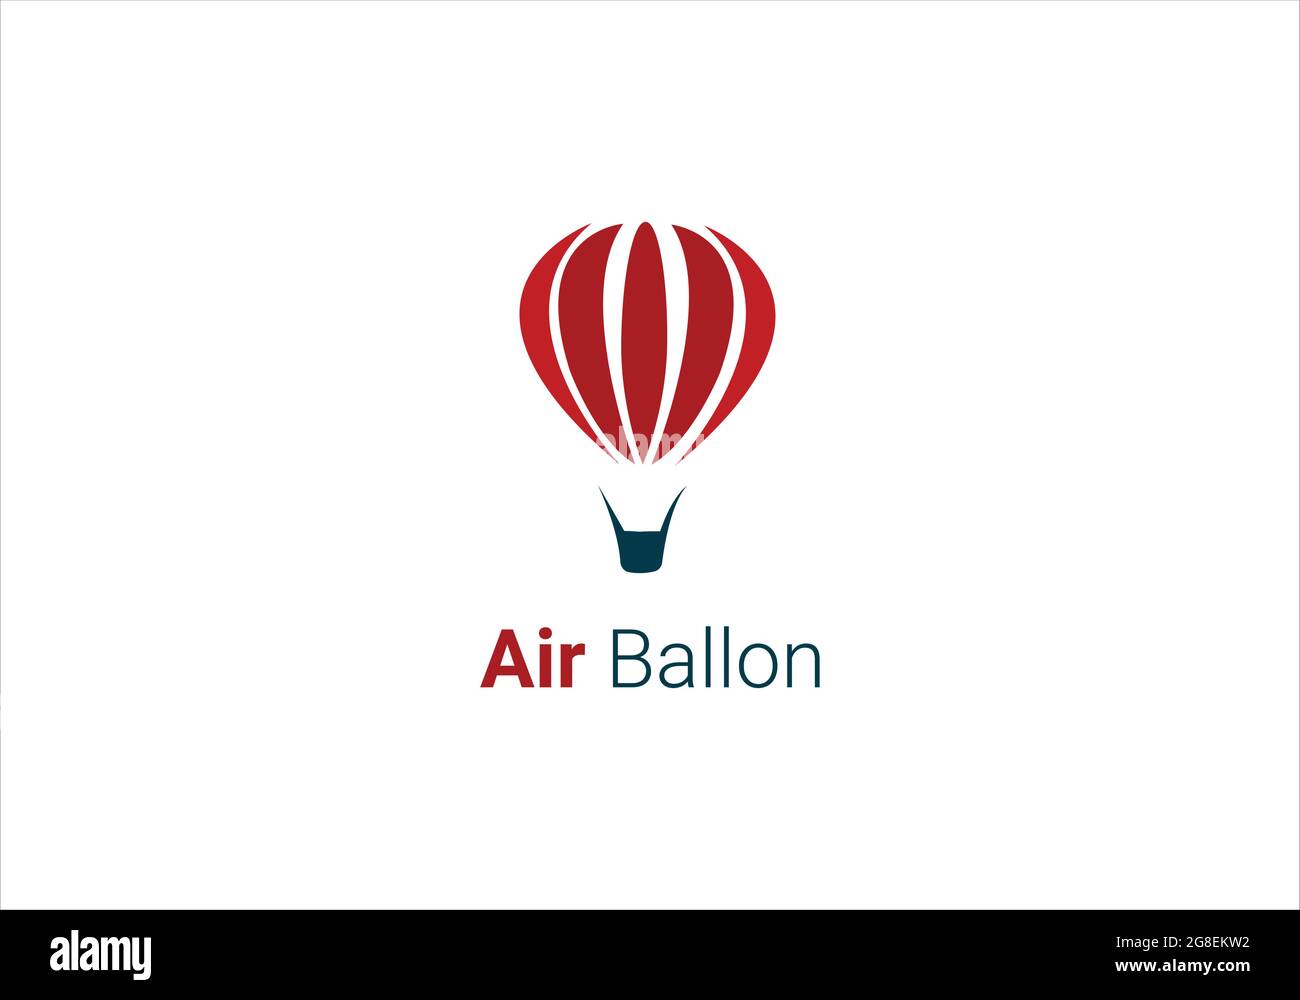 Design-Vorlage für das Logo des Luftballons Stock Vektor